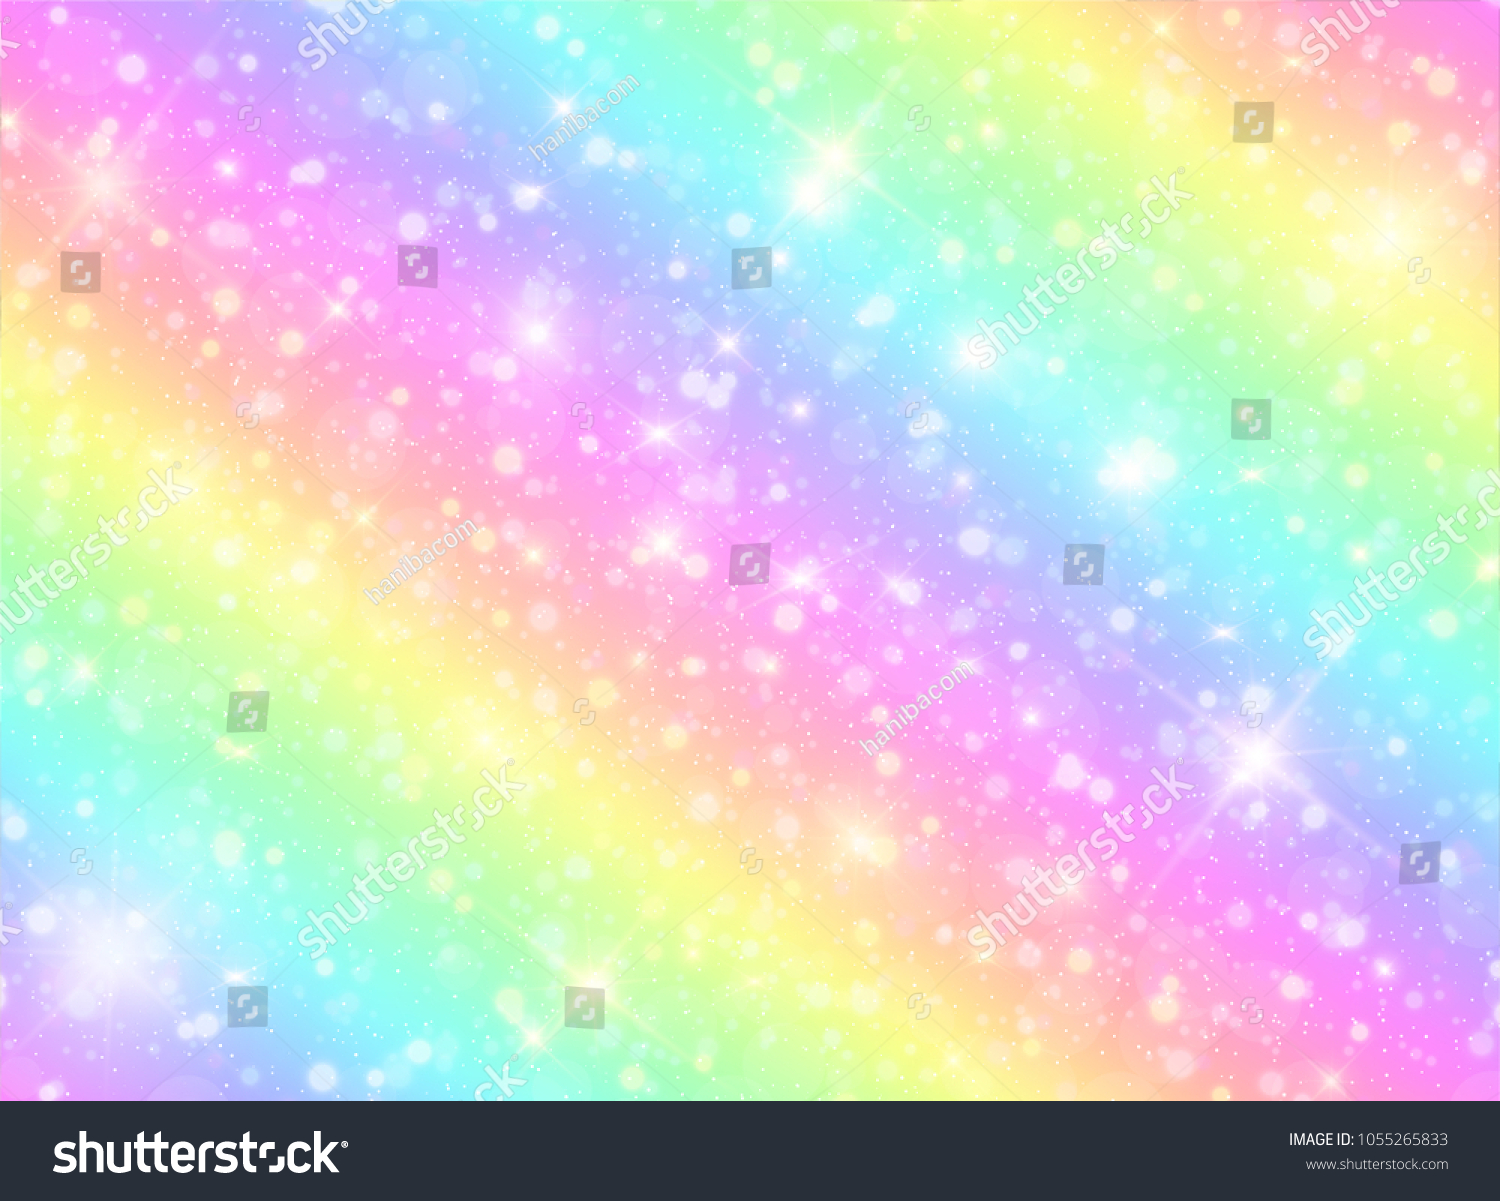 銀河ファンタジー背景とパステルカラーのベクターイラスト パステル空に虹を描いたユニコーン ボケとパステル雲と空 かわいい明るい飴の背景 のベクター画像素材 ロイヤリティフリー